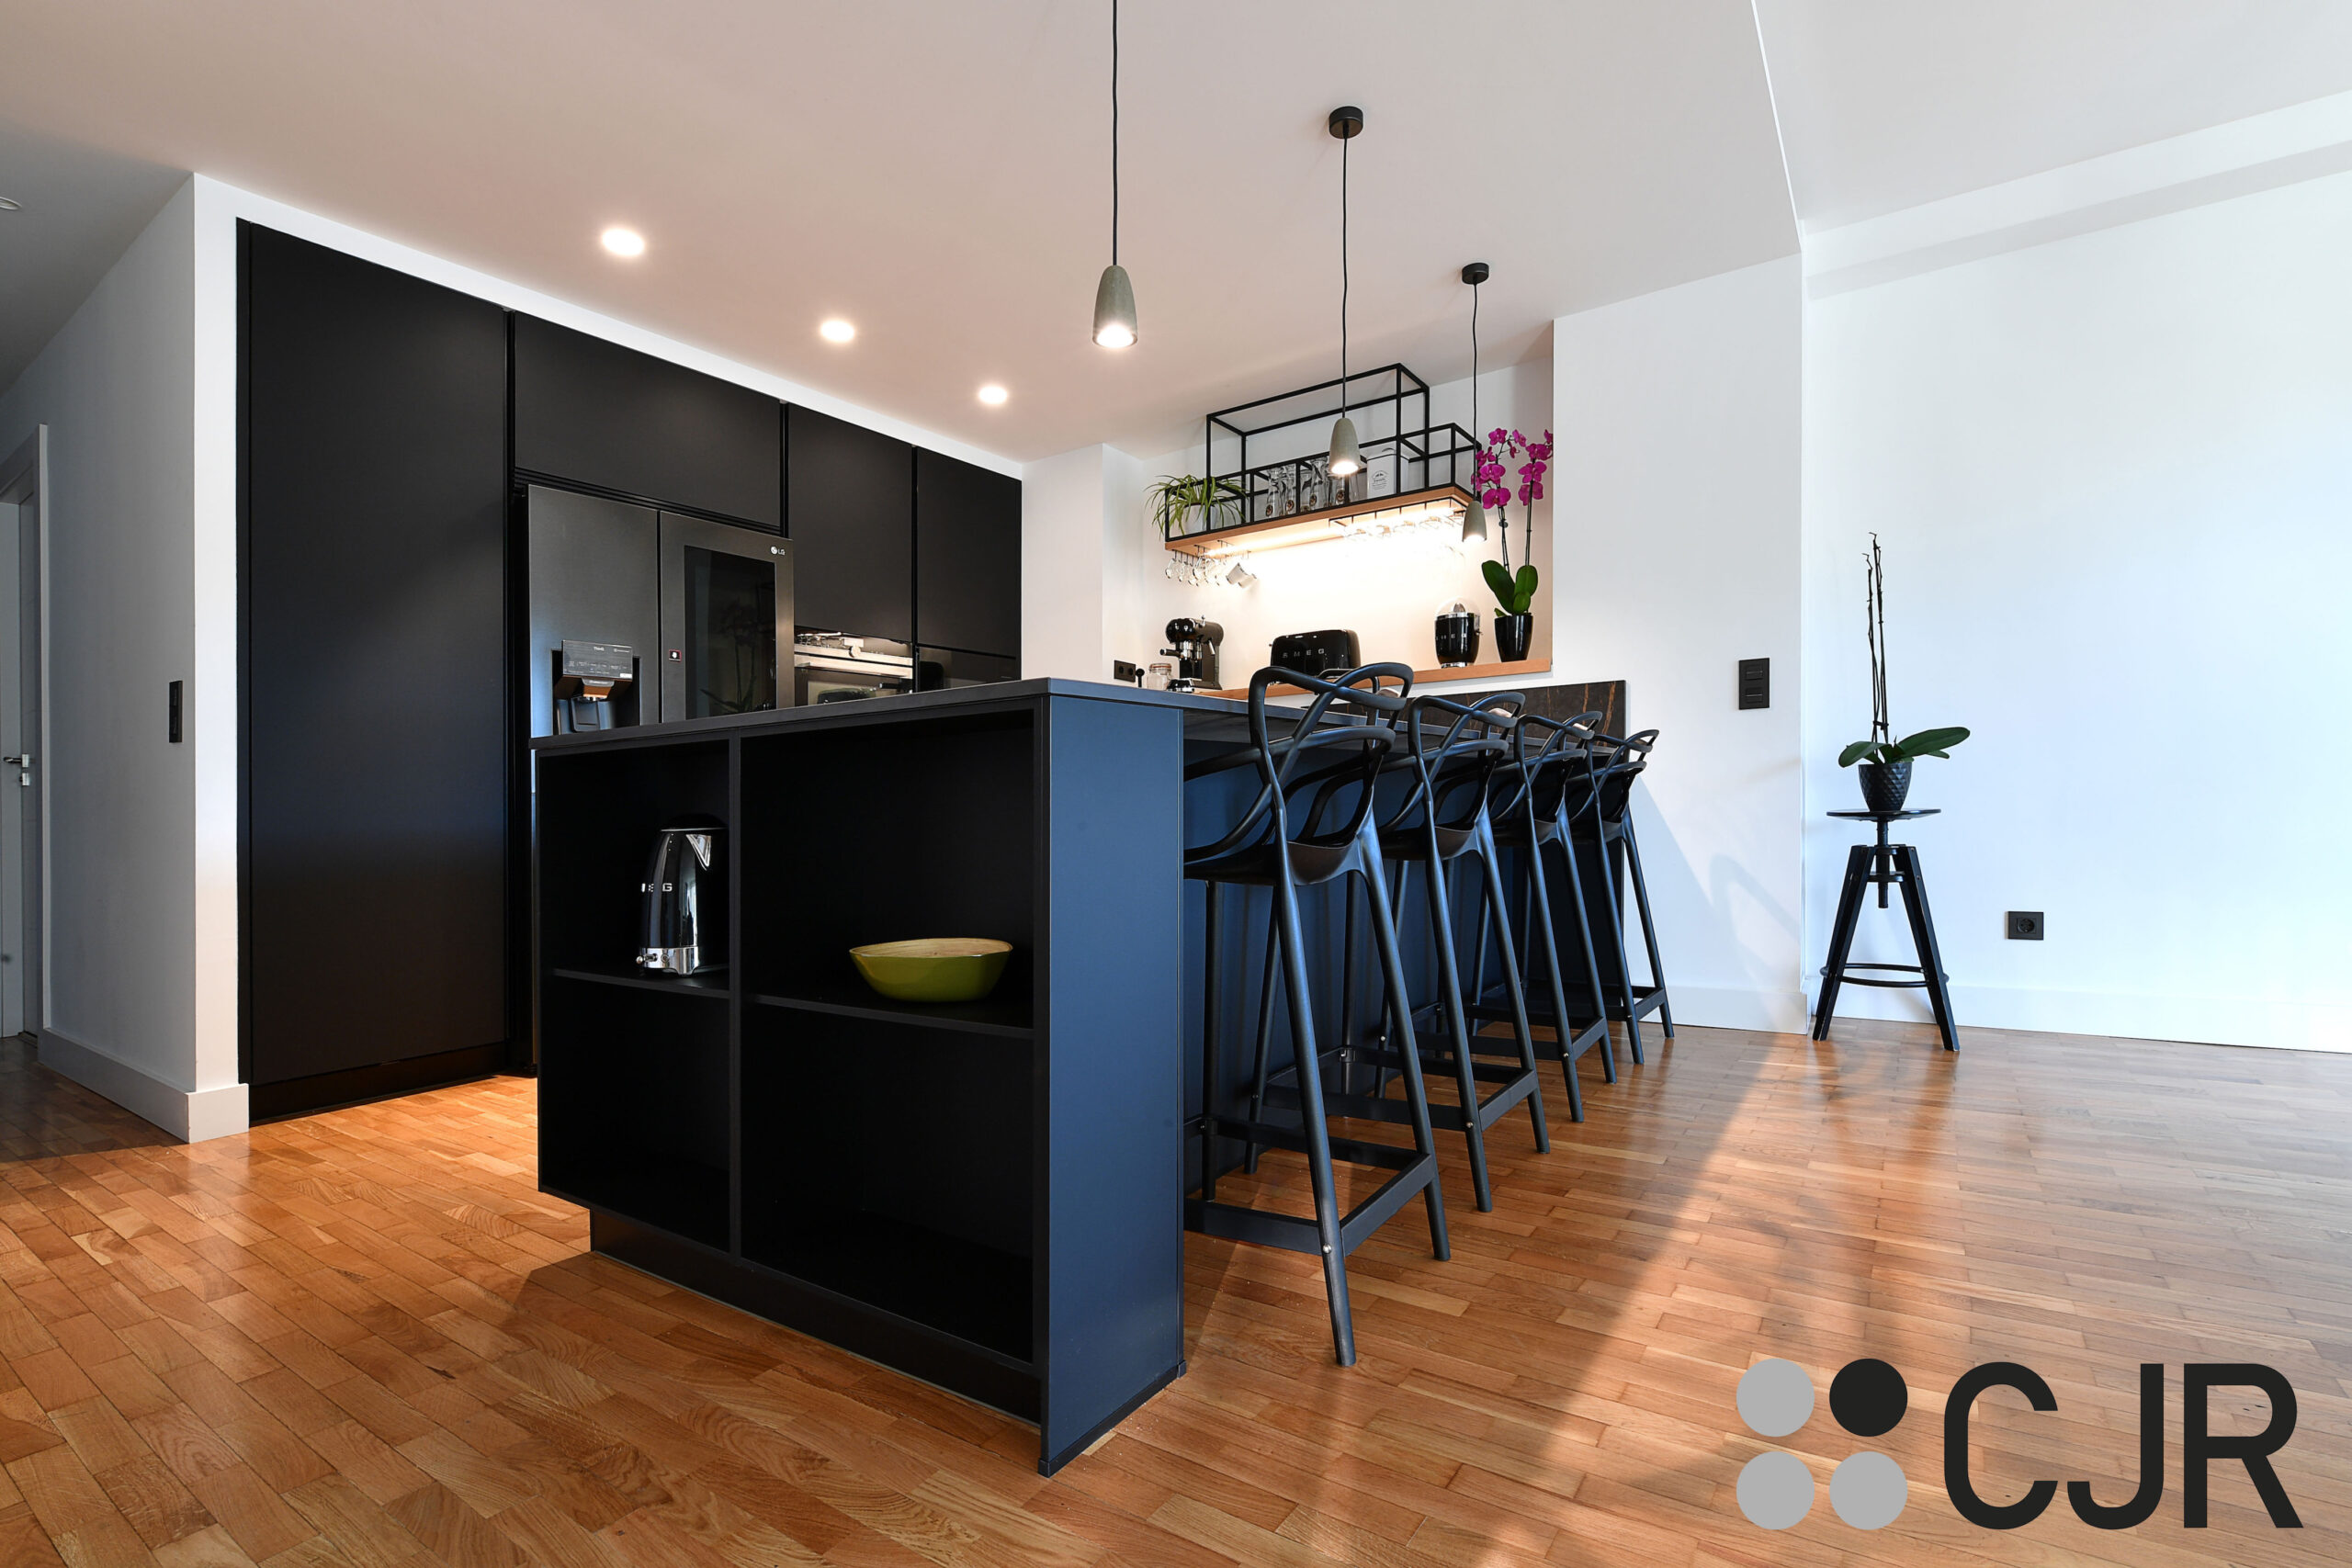 barra de cocina abierta al salon en negro cjr